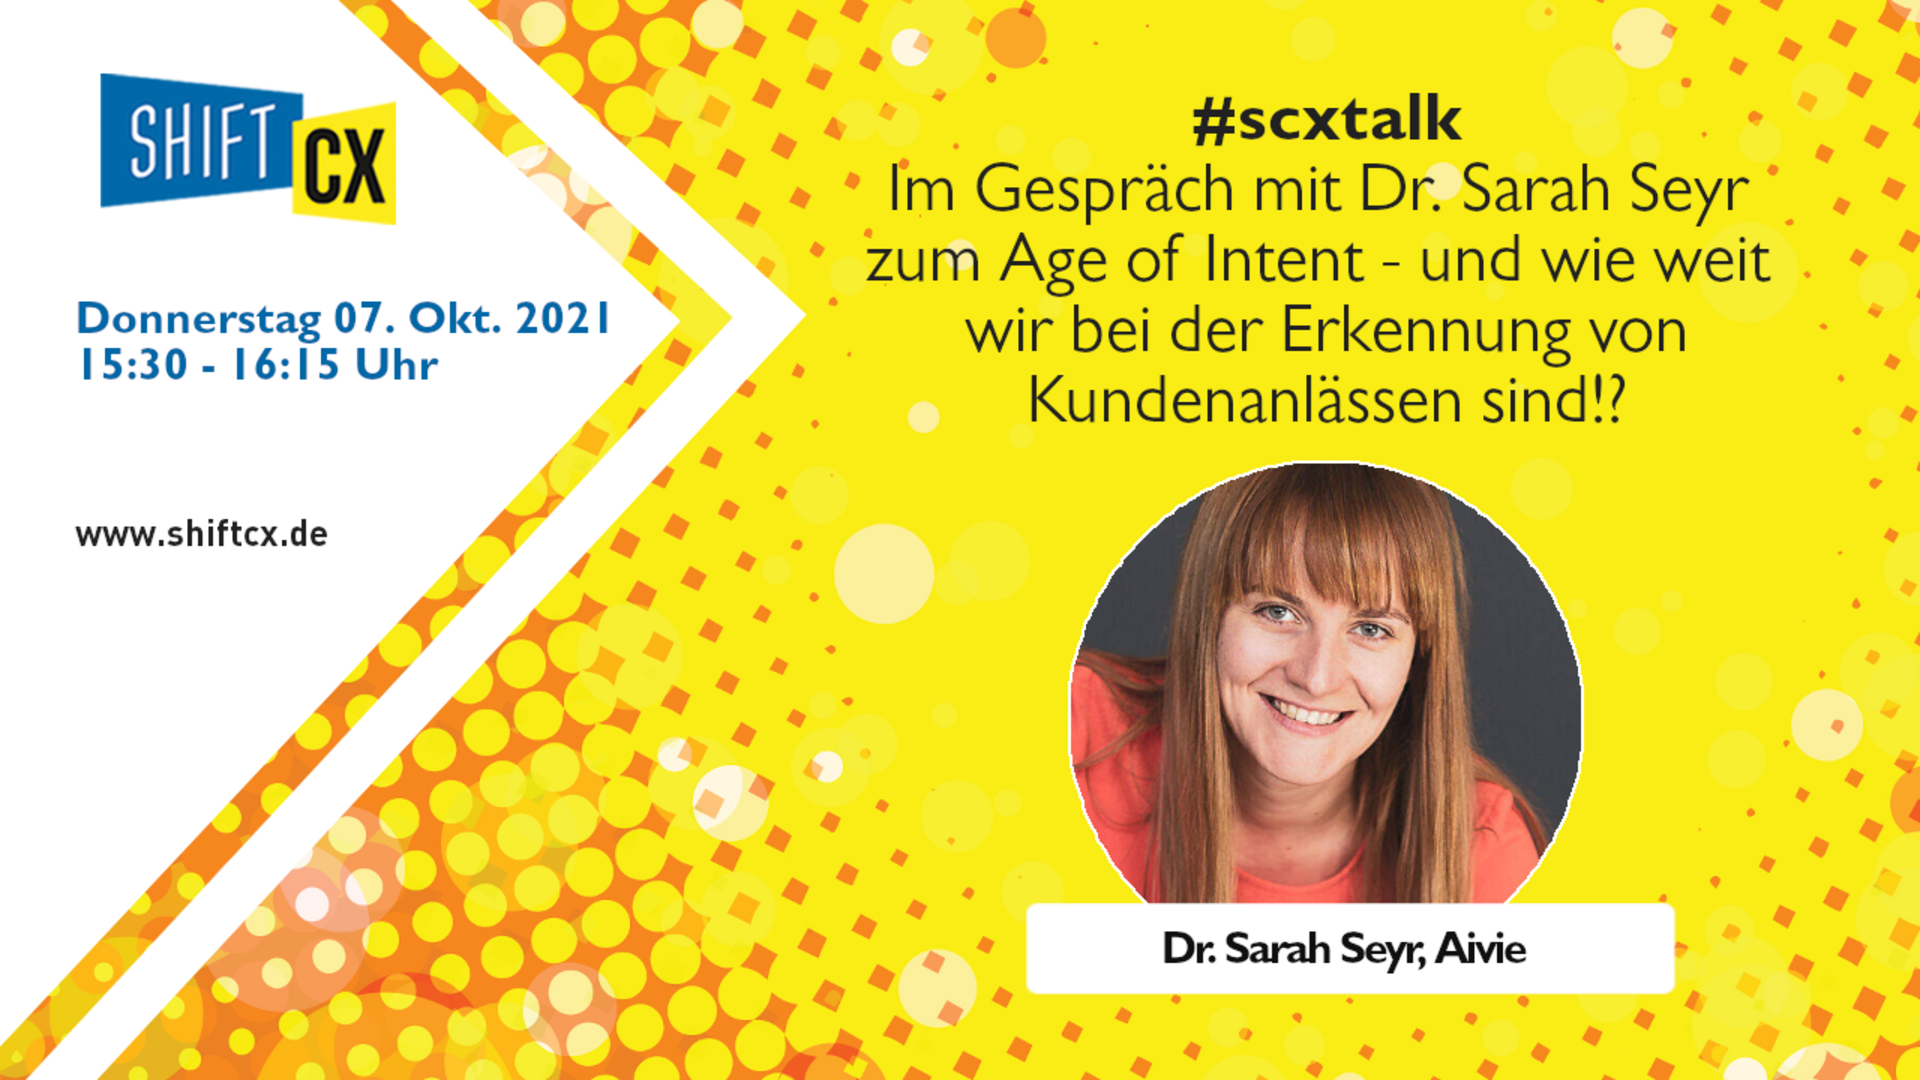 Im Gespräch mit Dr. Sarah Seyr zum Age of Intent - und wie weit wir bei der Erkennung von Kundenanlässen sind!?